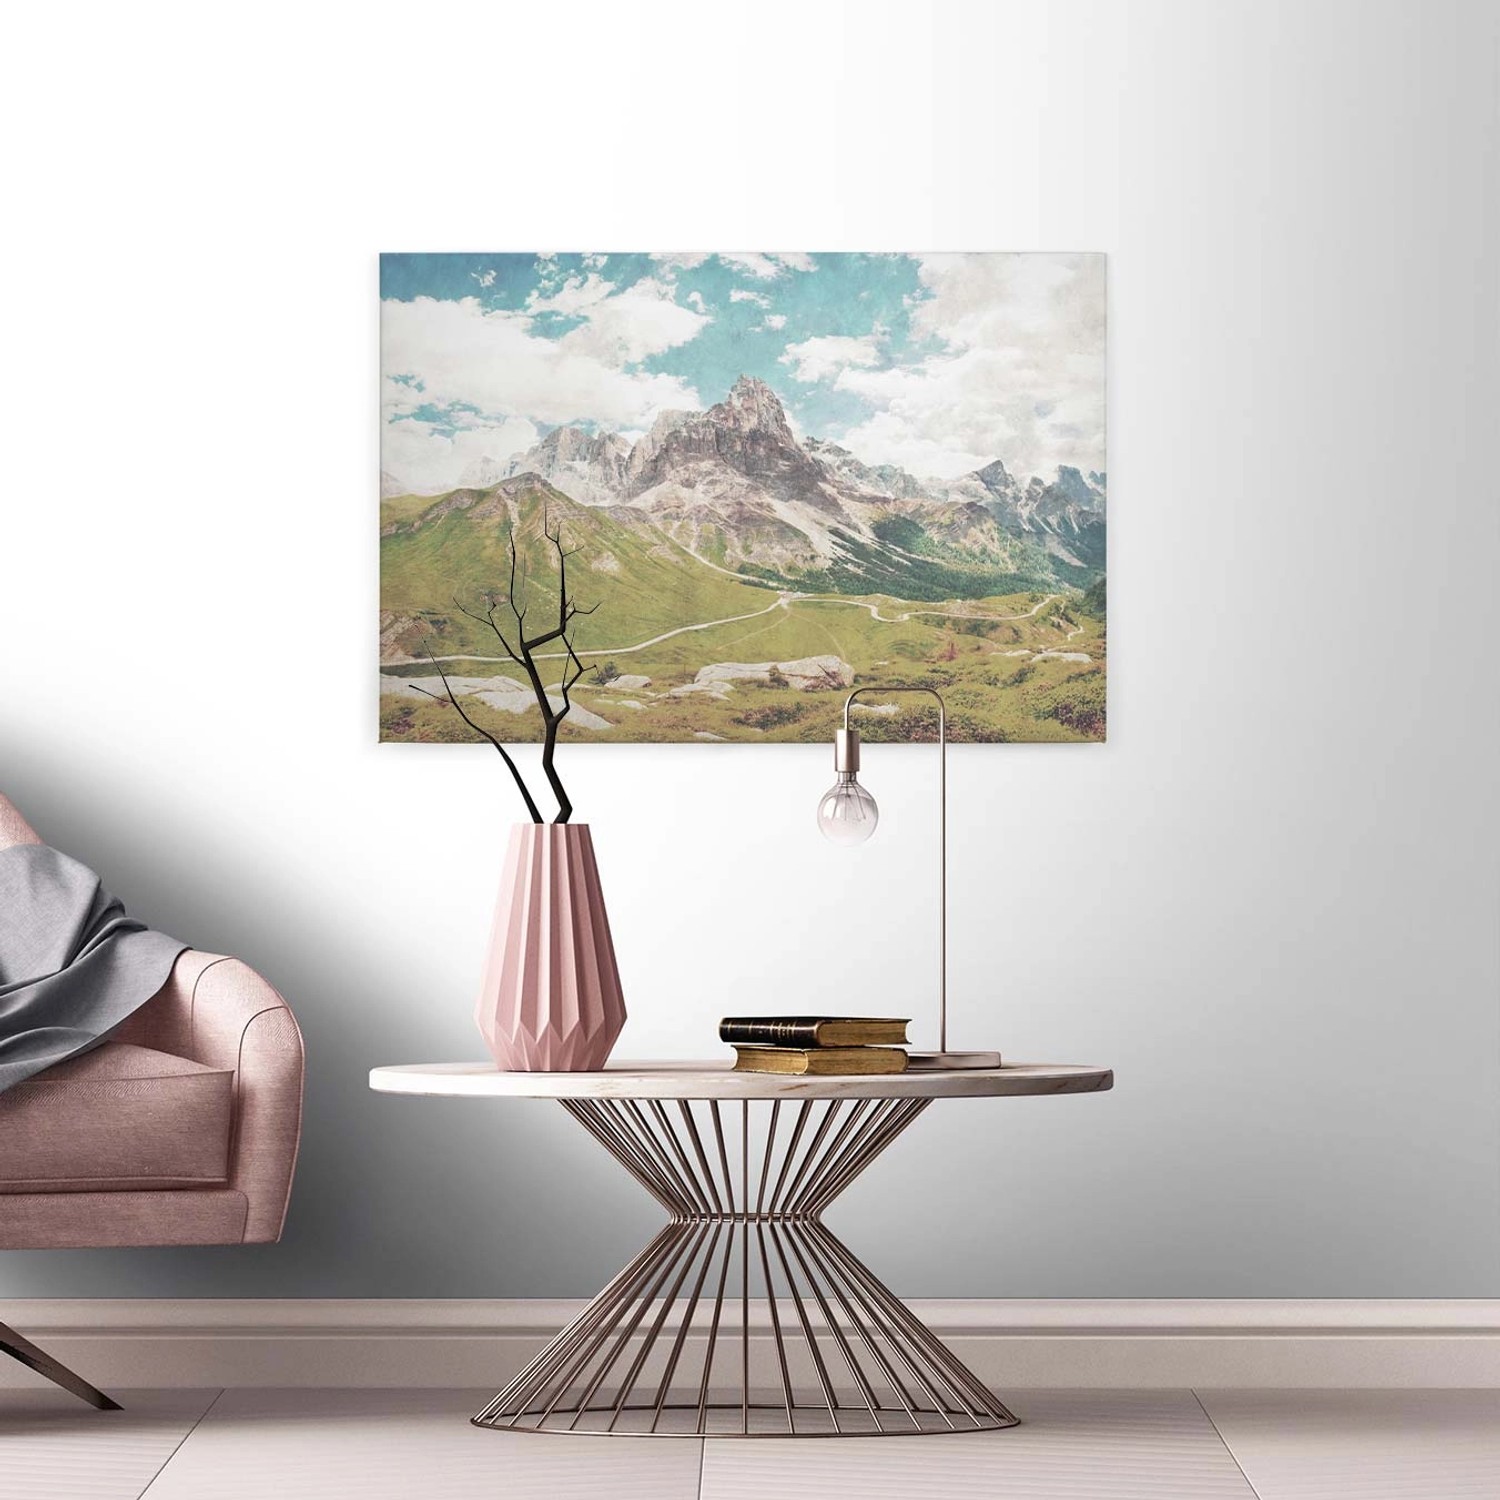 Bricoflor Leinwand Bild Mit Dolomiten Alpen Berglandschaft Auf Leinwand Ideal Für Schlaf Und Wohnzimmer Pastell Wandbild